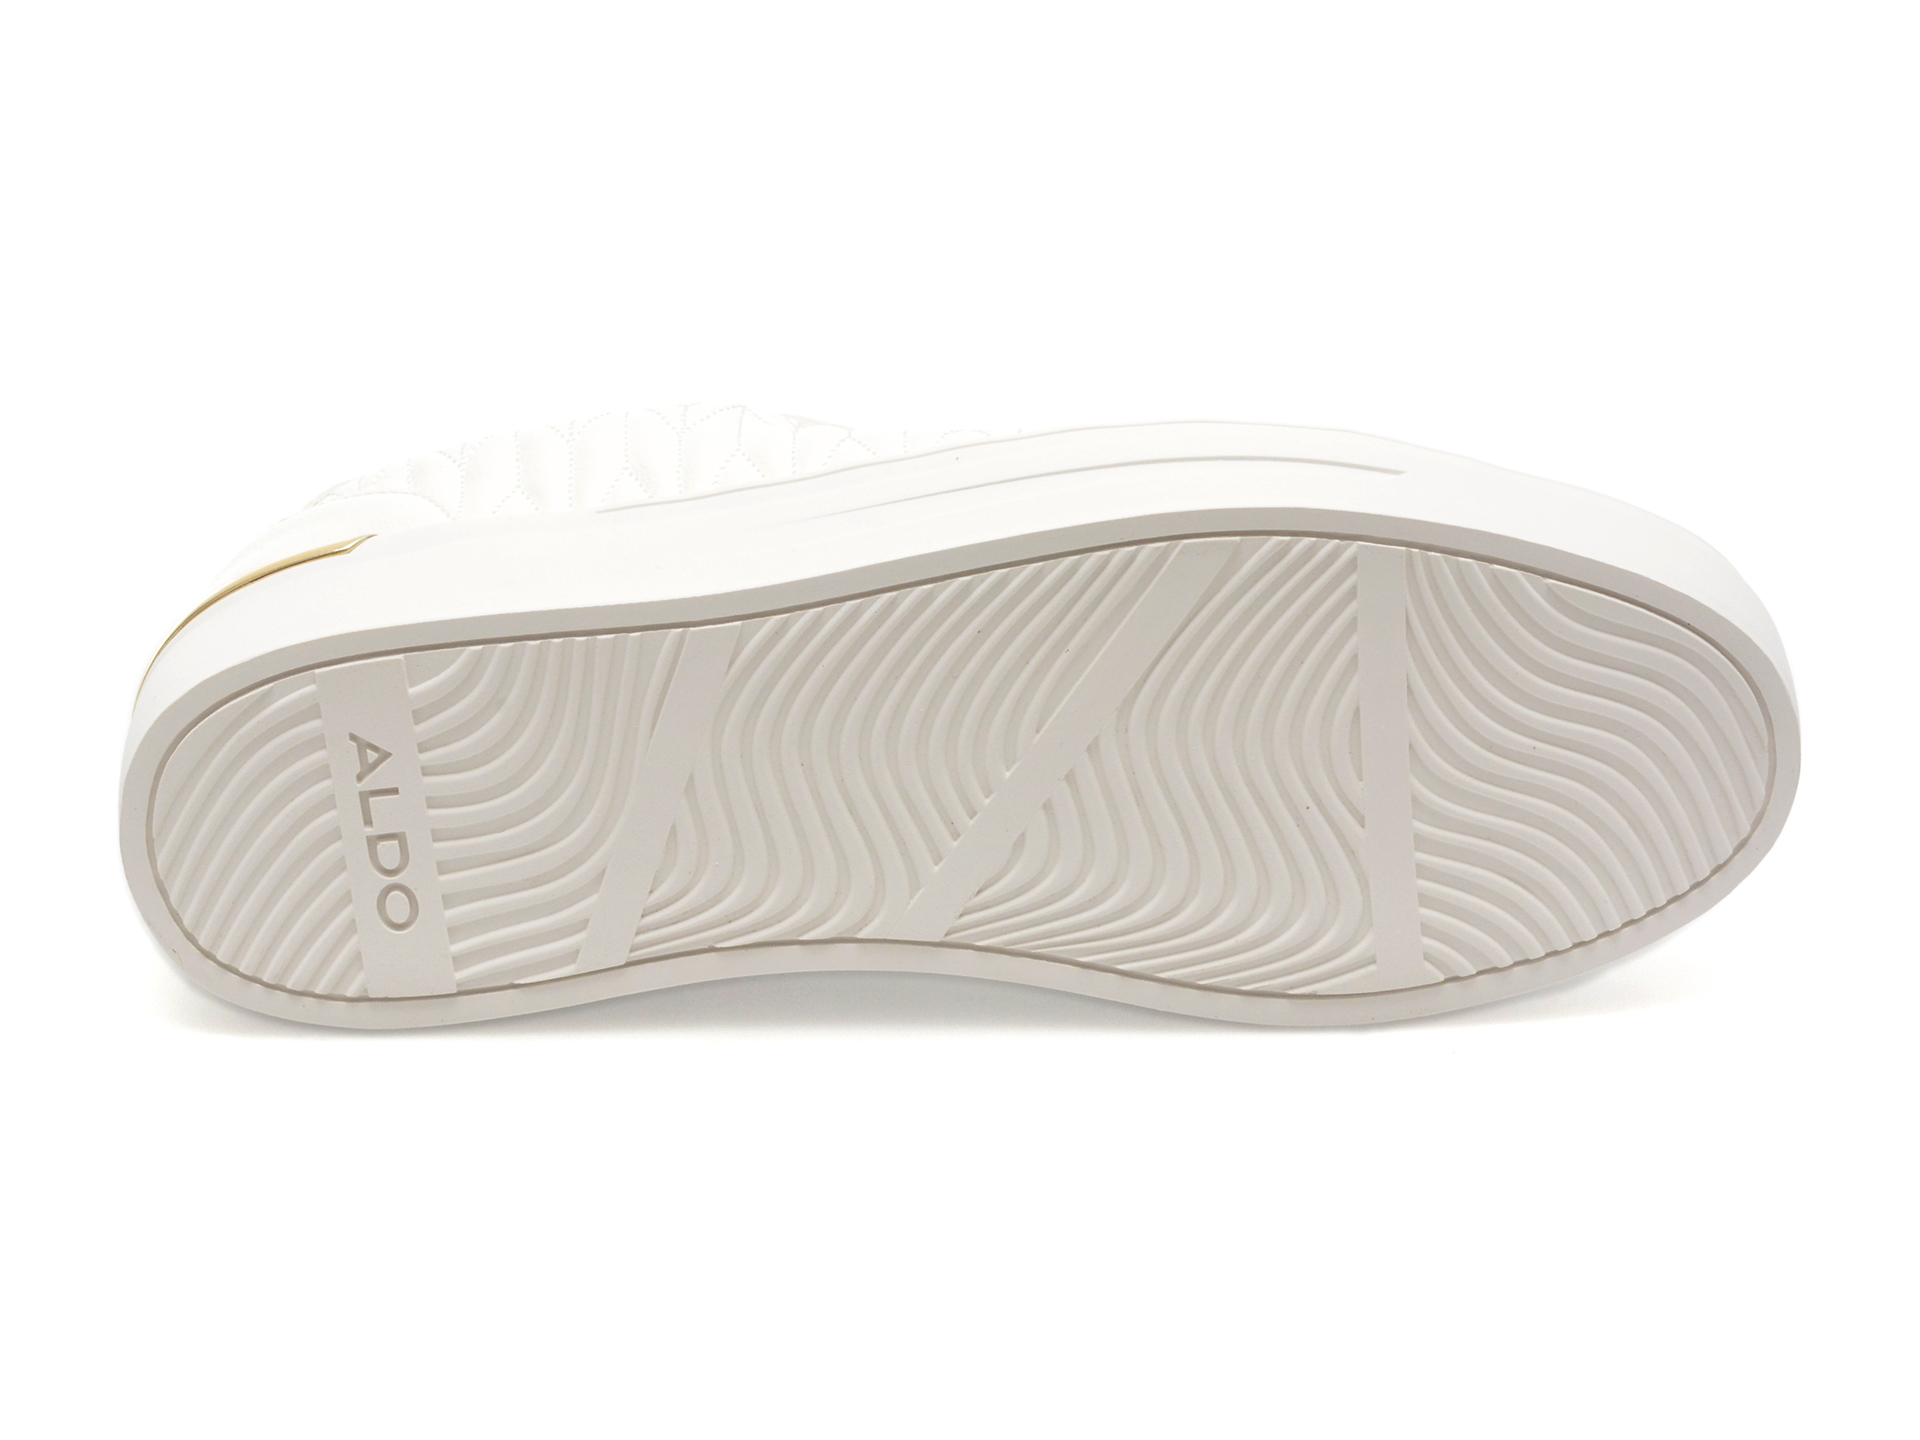 Pantofi ALDO albi, APPIER100, din piele ecologica